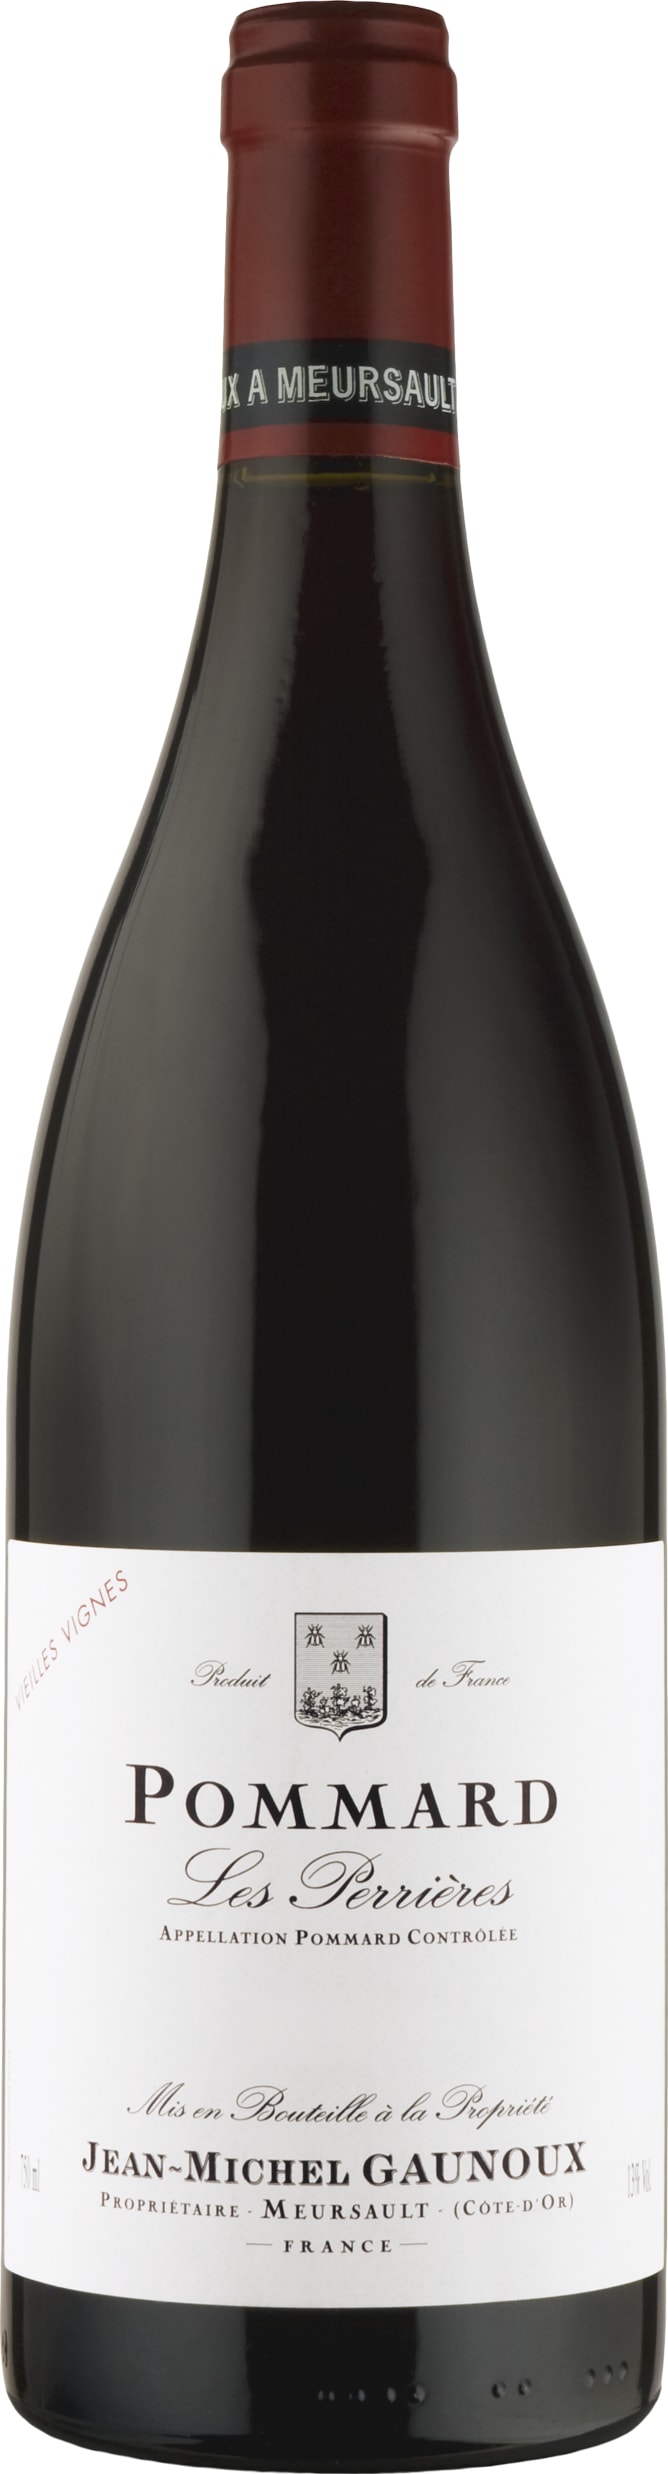 Jean-Michel Gaunoux Pommard Les Perrieres 2016 75cl - Buy Jean-Michel Gaunoux Wines from GREAT WINES DIRECT wine shop